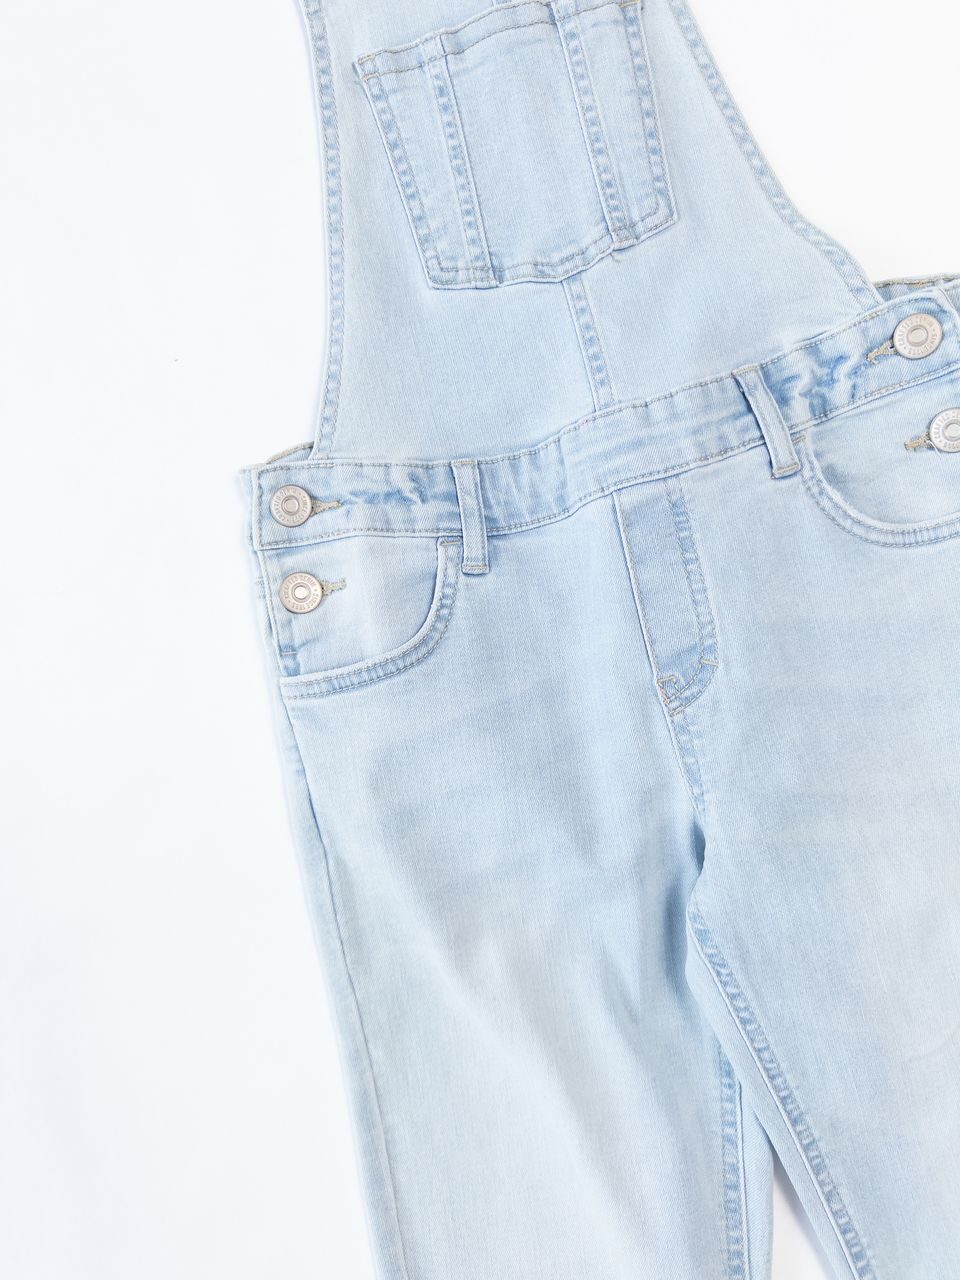 Комбинезон джинсовый для девочки цвет голубой на рост 146 см C&A (дефект выгоревшая полоска)